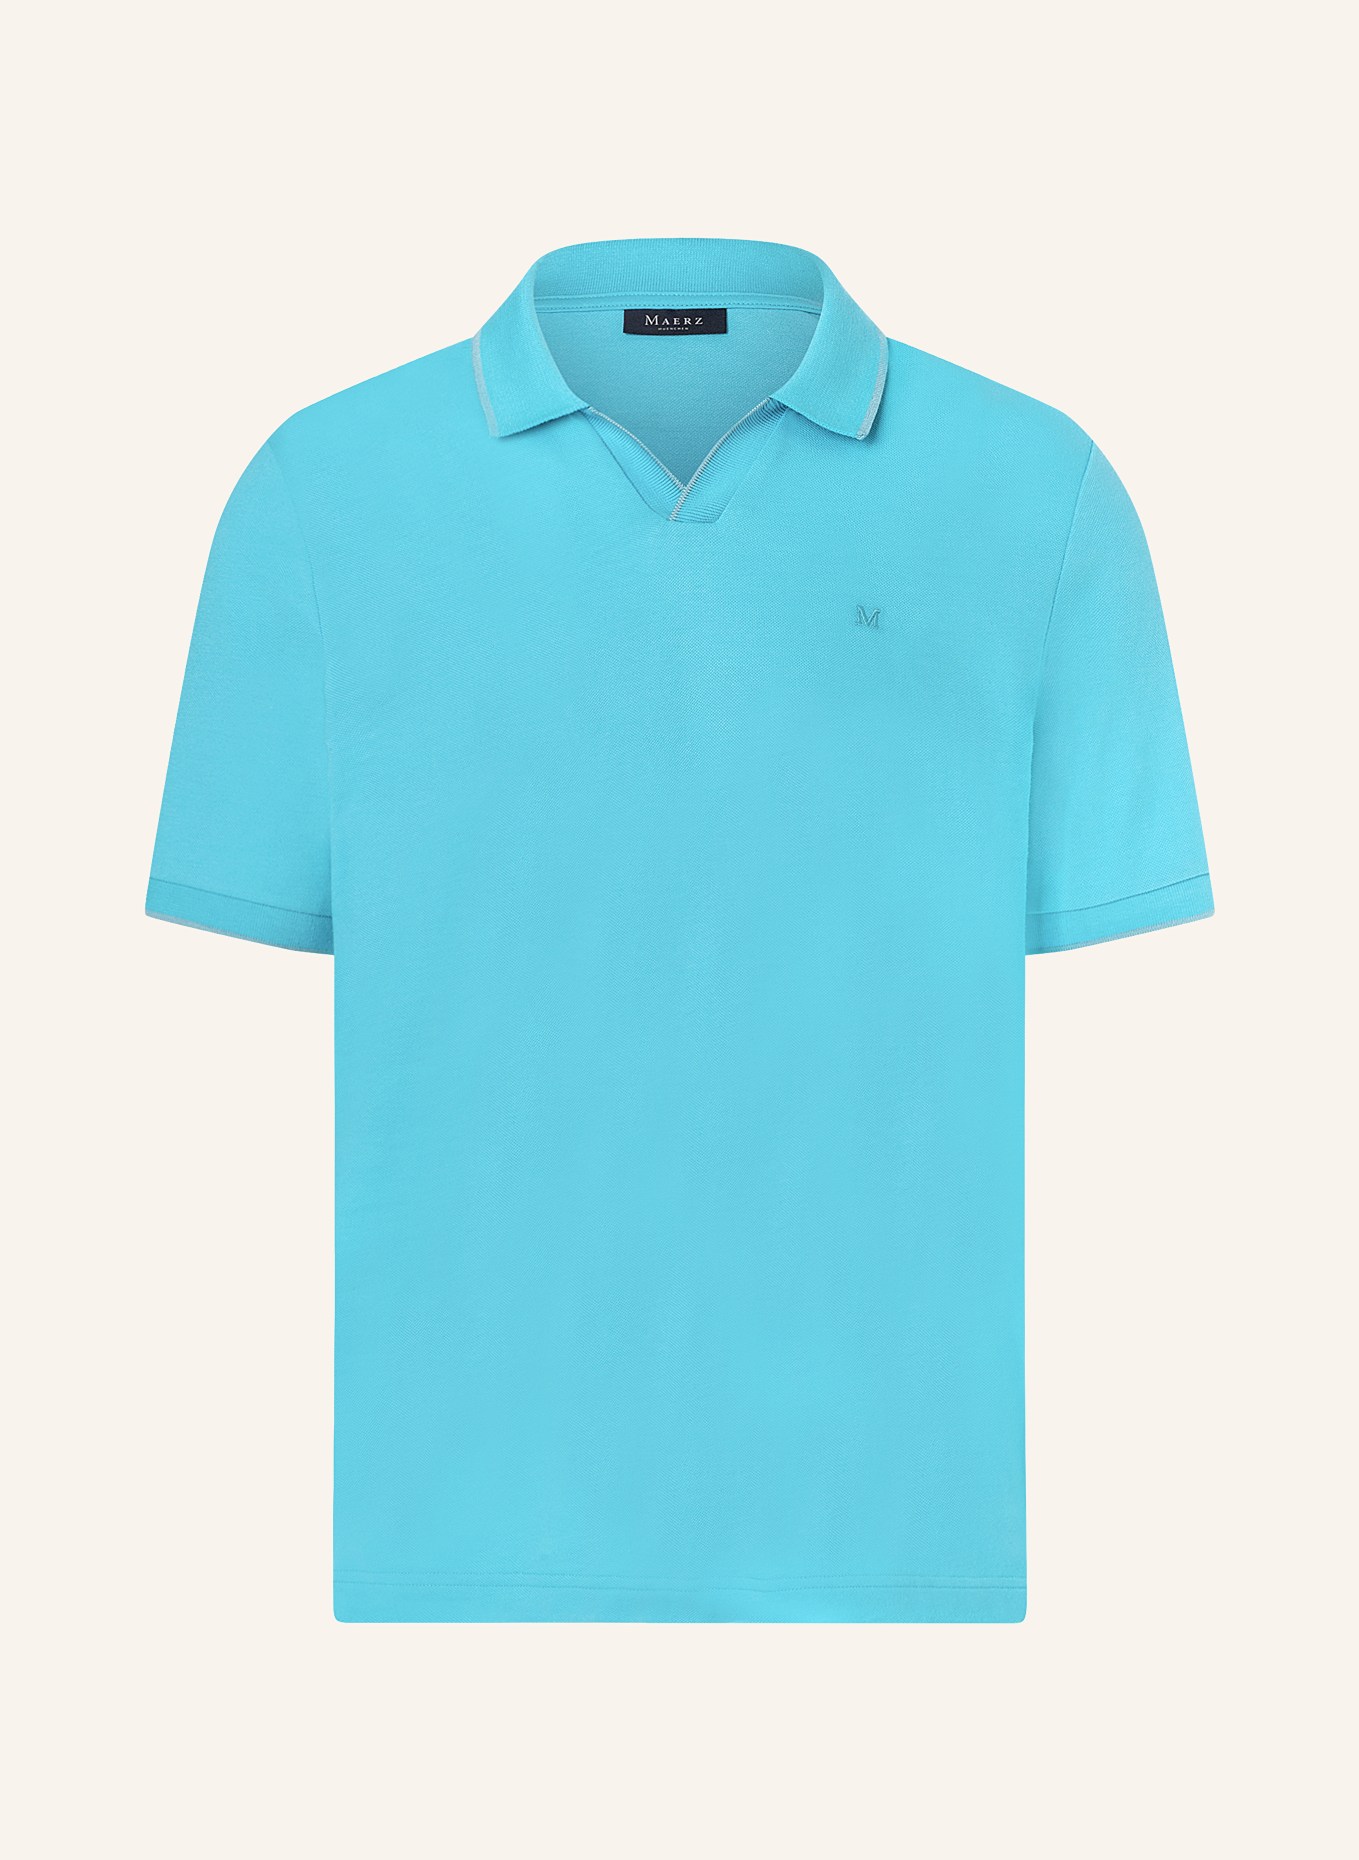 MAERZ MUENCHEN Piqué-Poloshirt, Farbe: TÜRKIS (Bild 1)